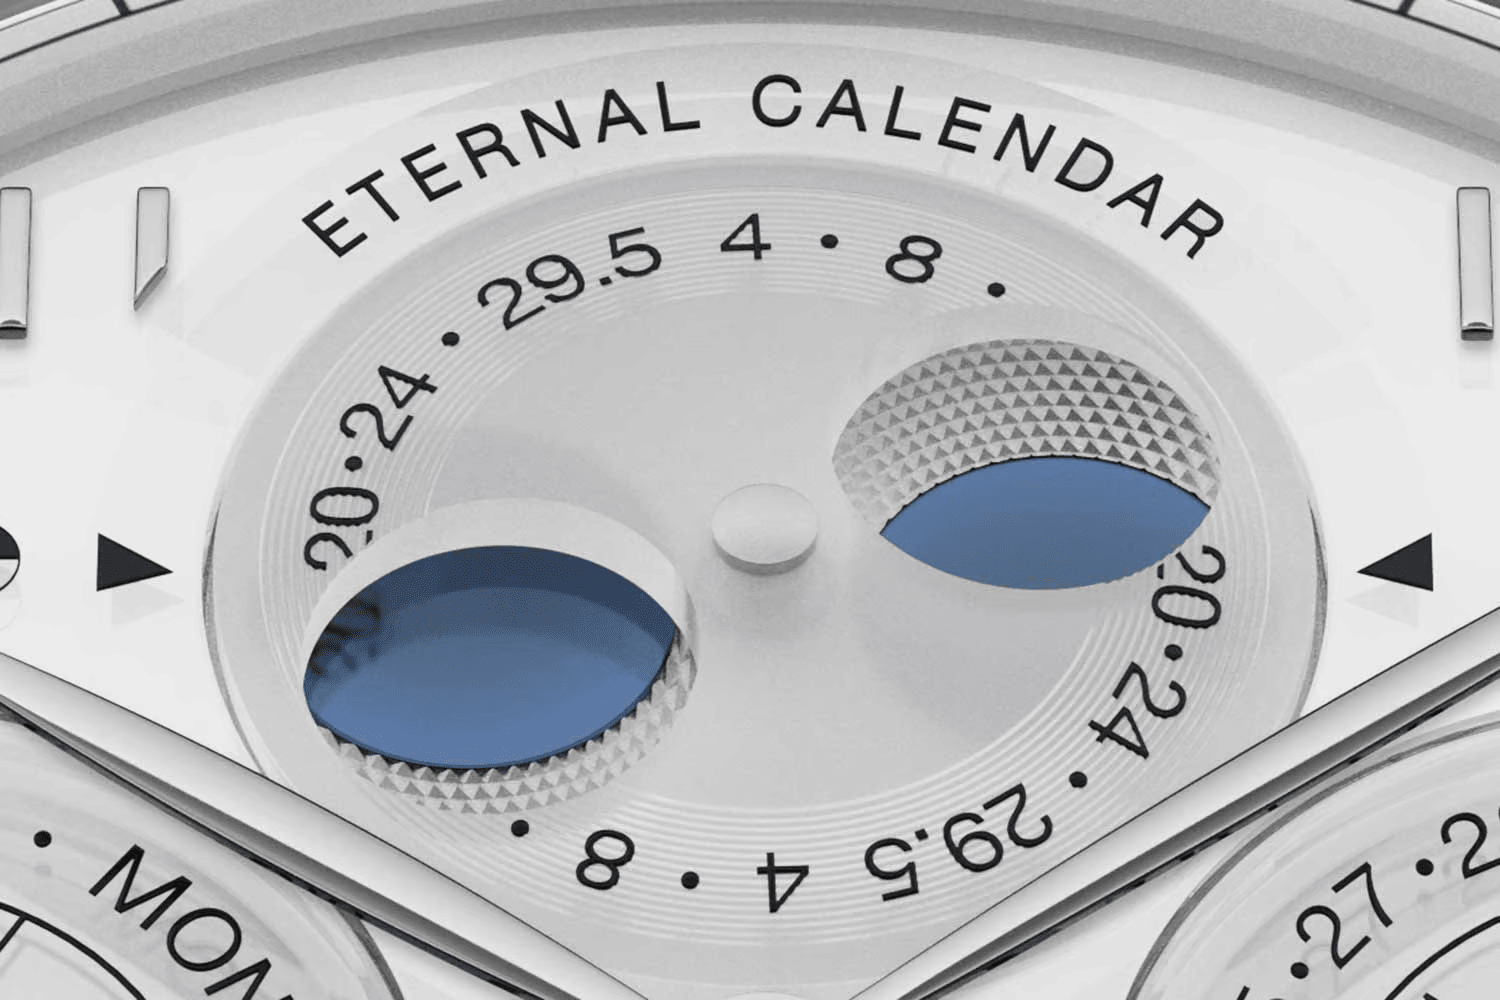 Lịch vĩnh cửu (Perpetual Calendar) của Portugieser 